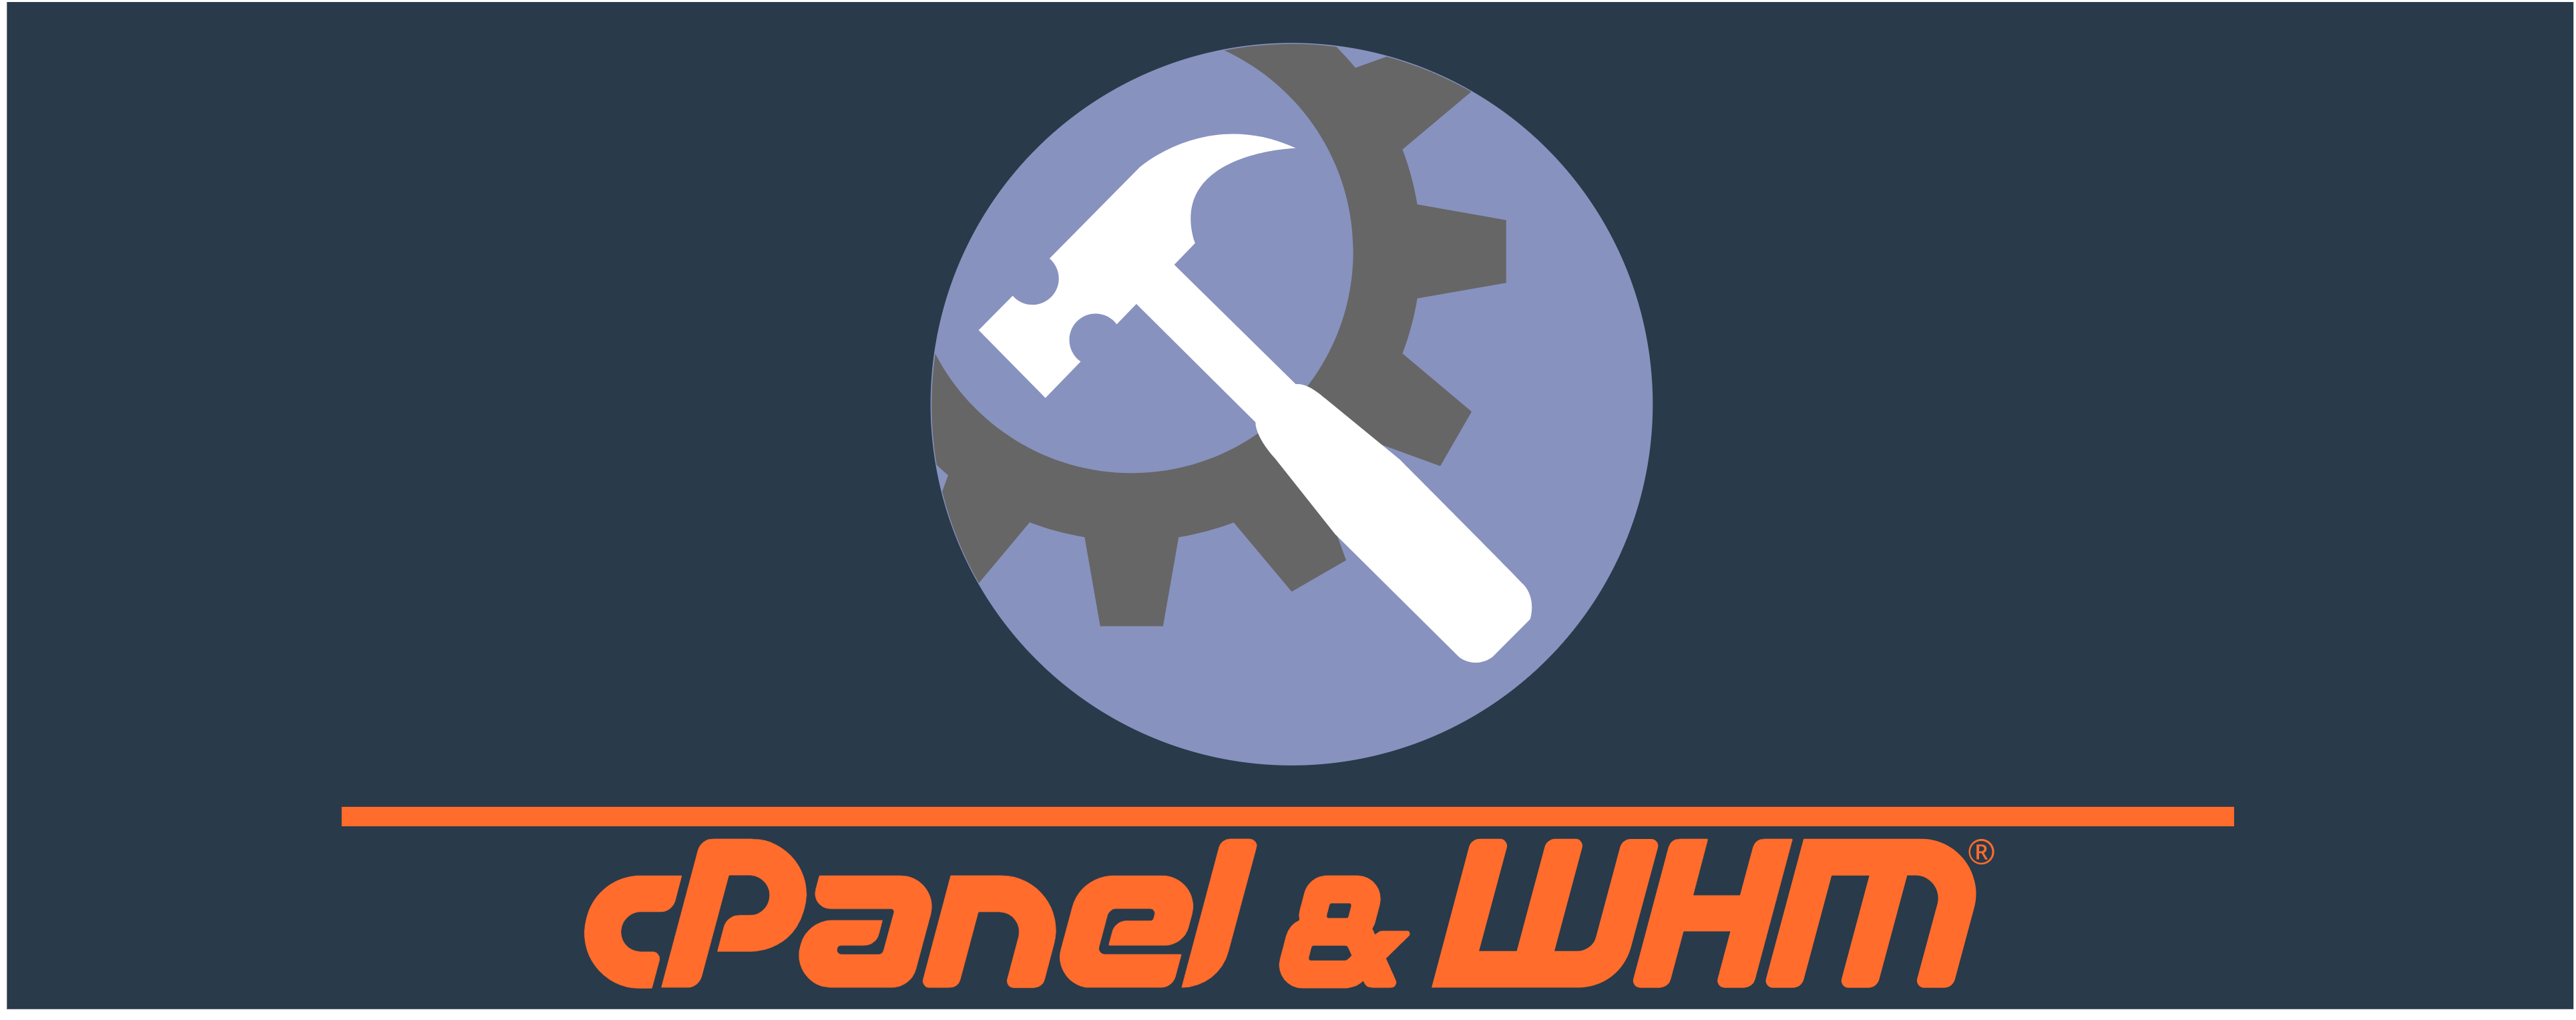 New SSL Standard Hooks for cPanel & WHM Integrators!